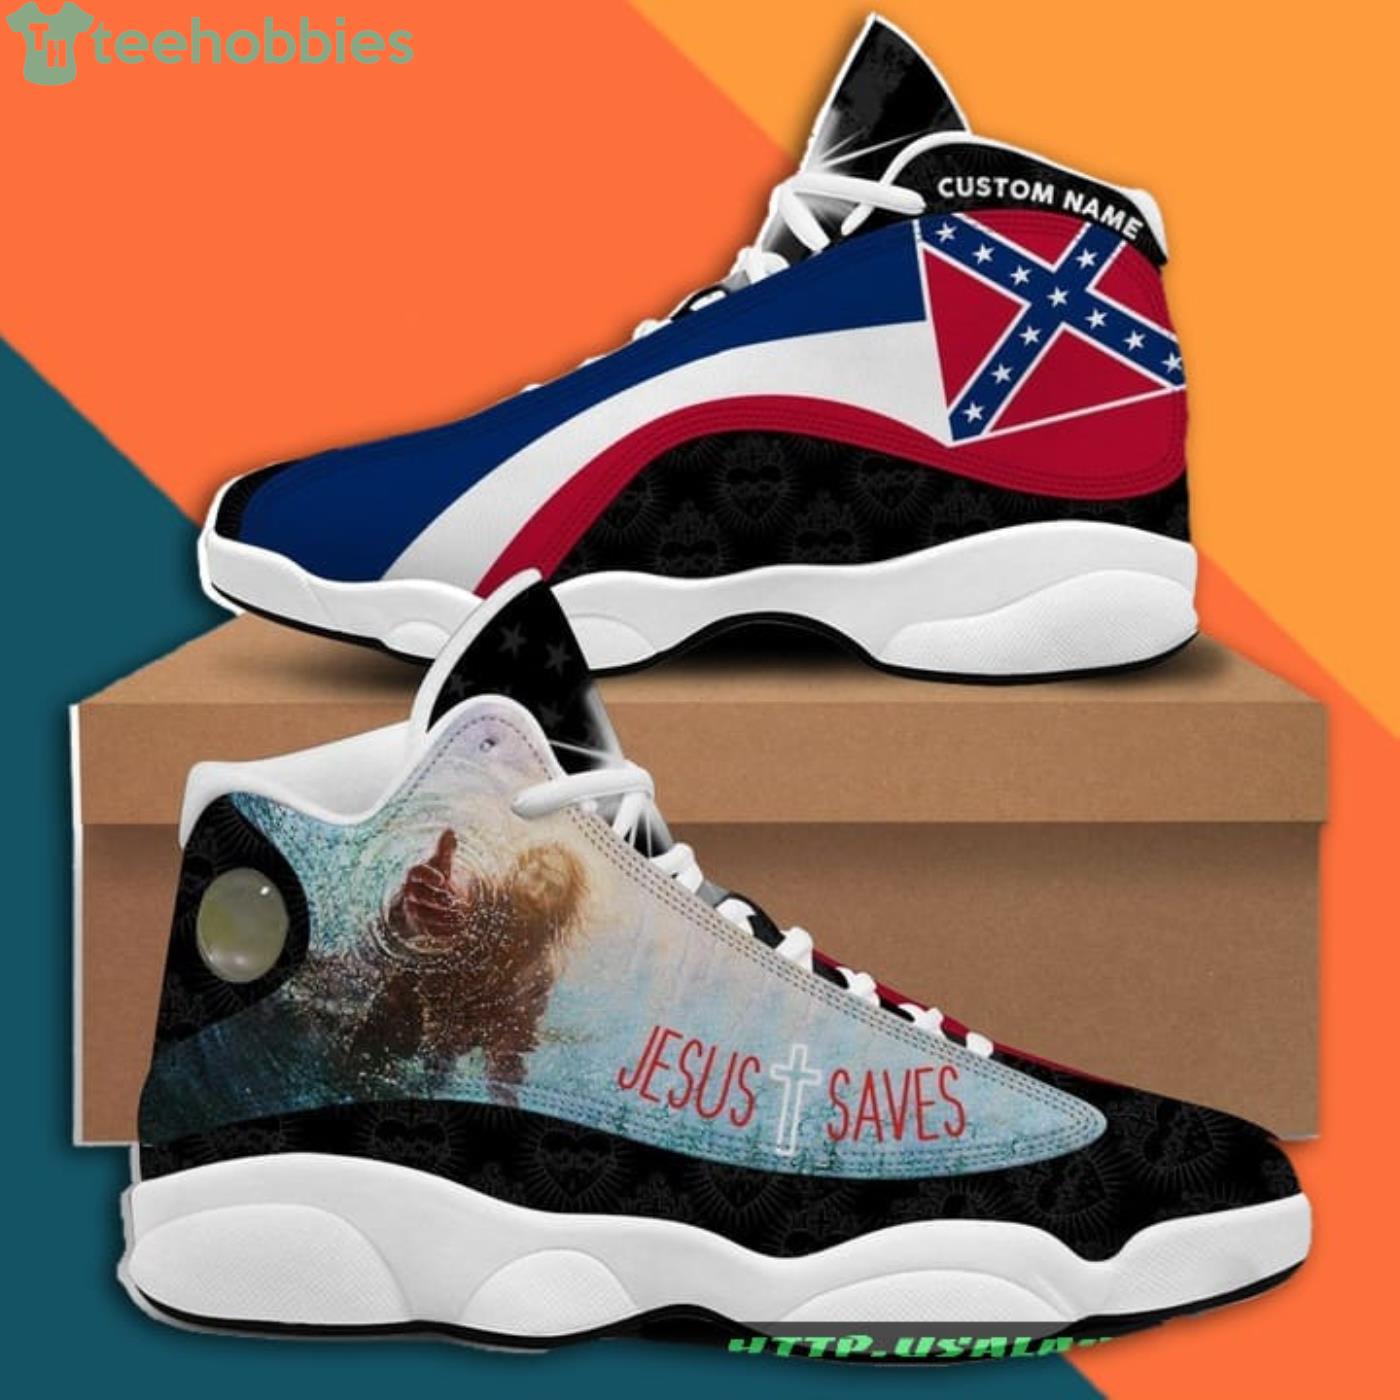 Custom Name Jesus Saves Air Jordan 13 Sneakers